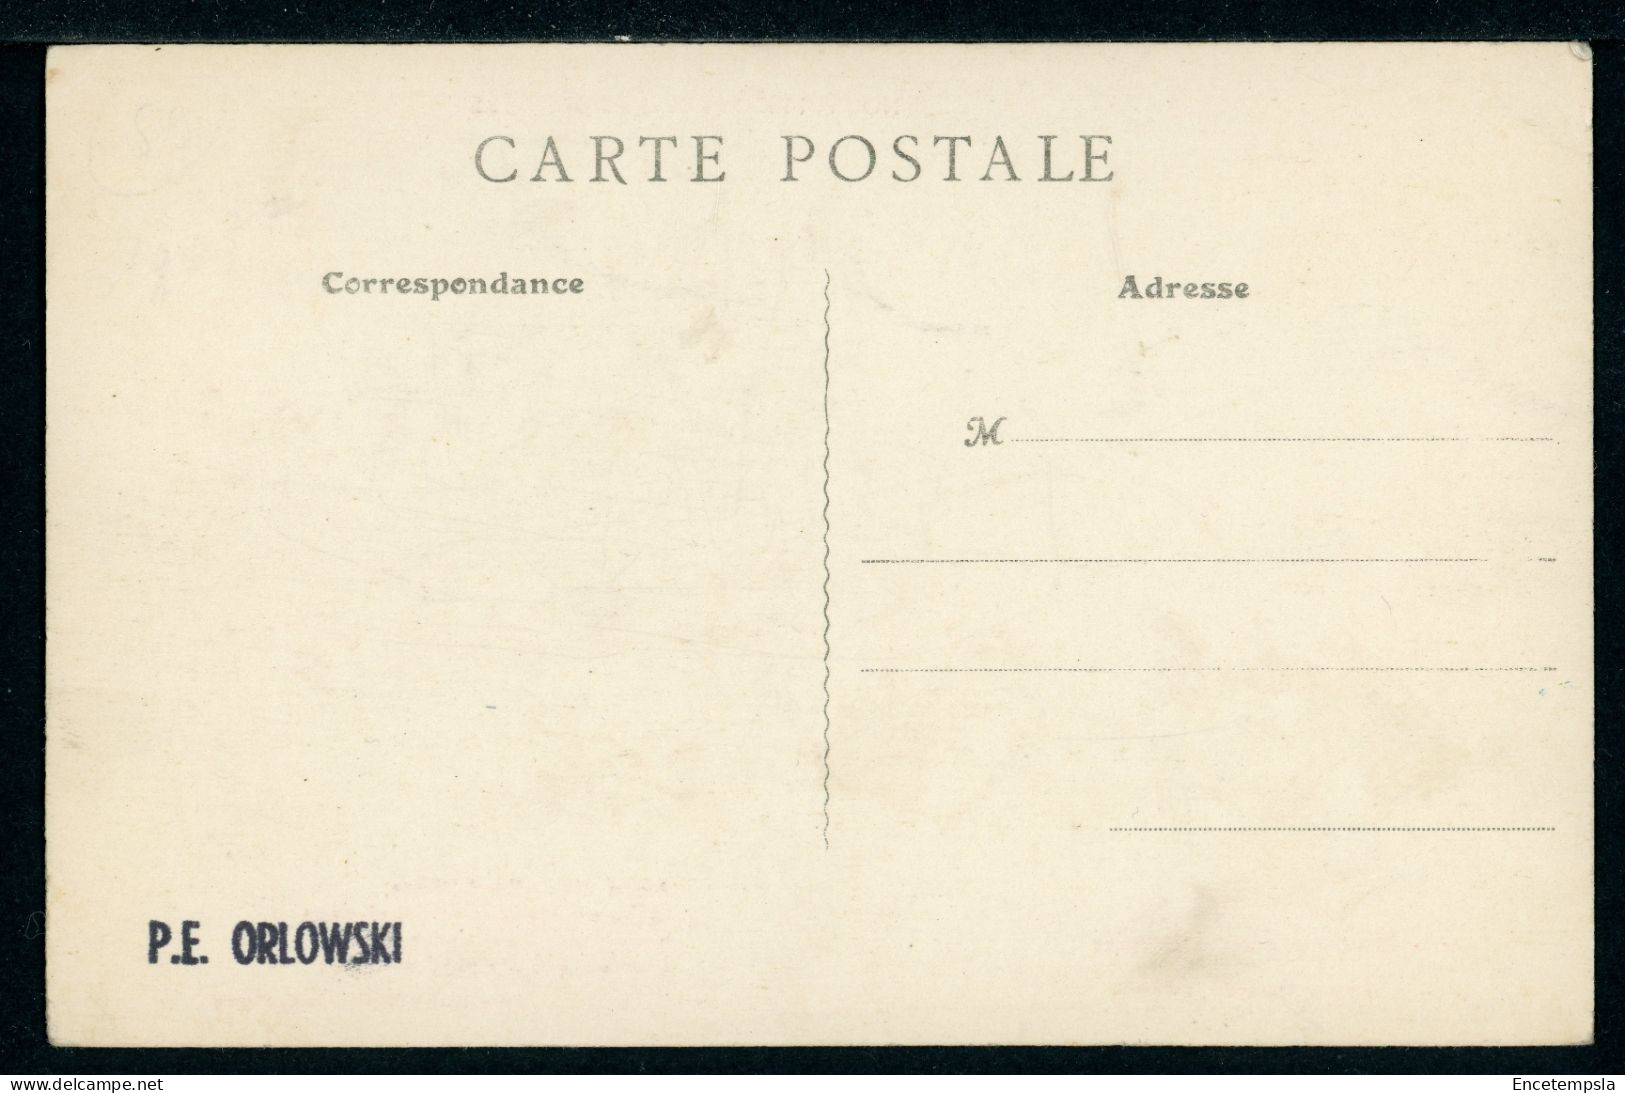 CPA - Carte Postale - Belgique - Nouvelle Série Des Mineurs - Mineur Partant à La Mine (CP23514OK) - Mines